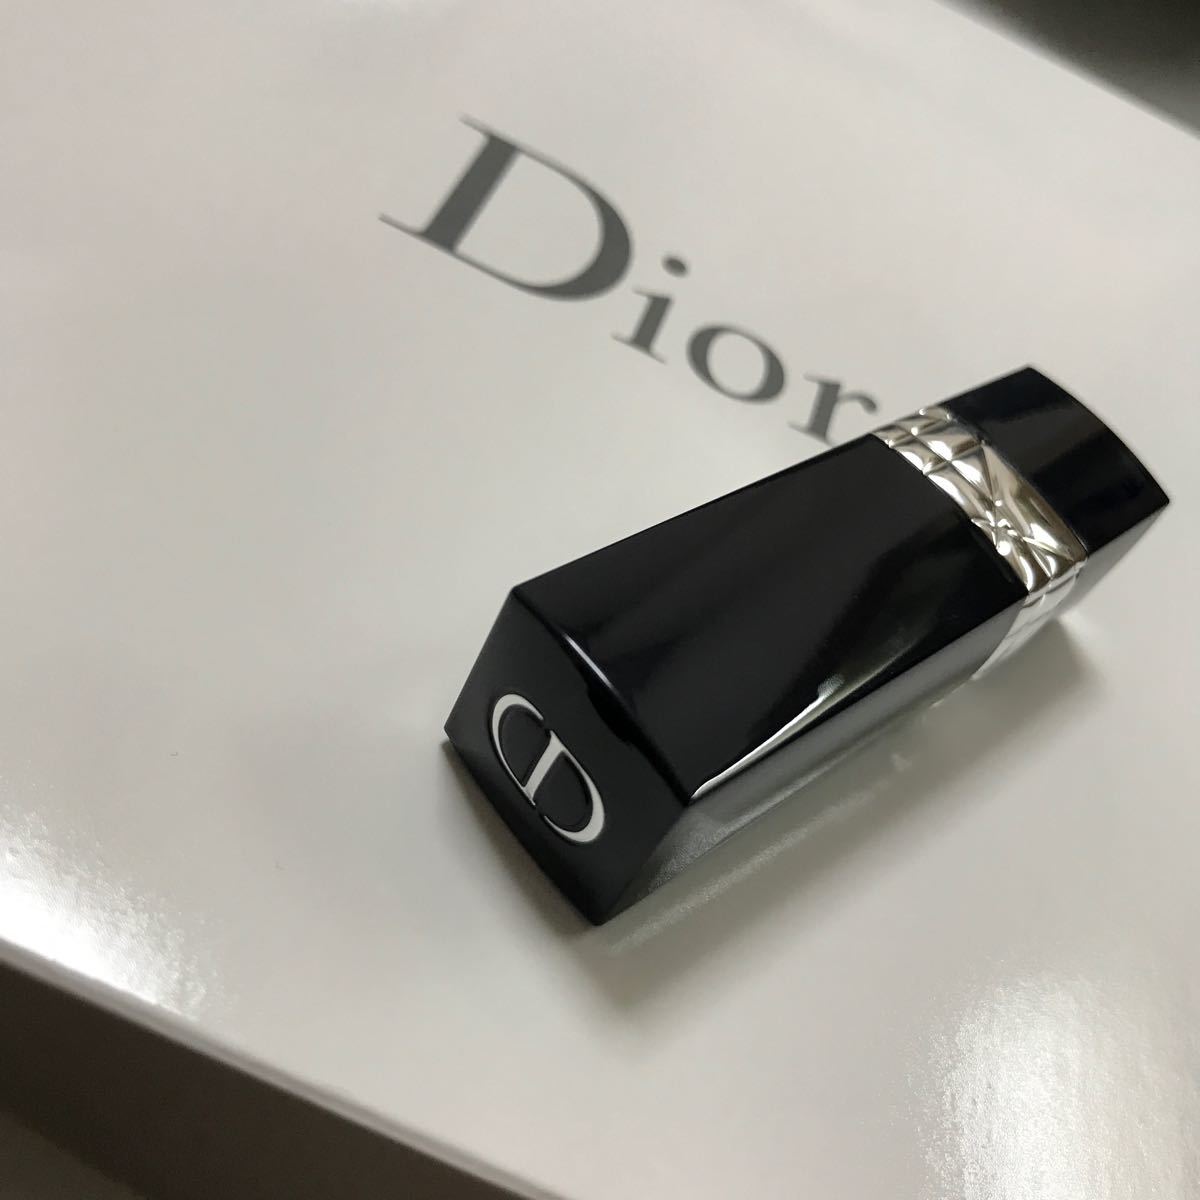 ディオール Dior ルージュディオール 999 リップ 口紅 サンプル 試供品